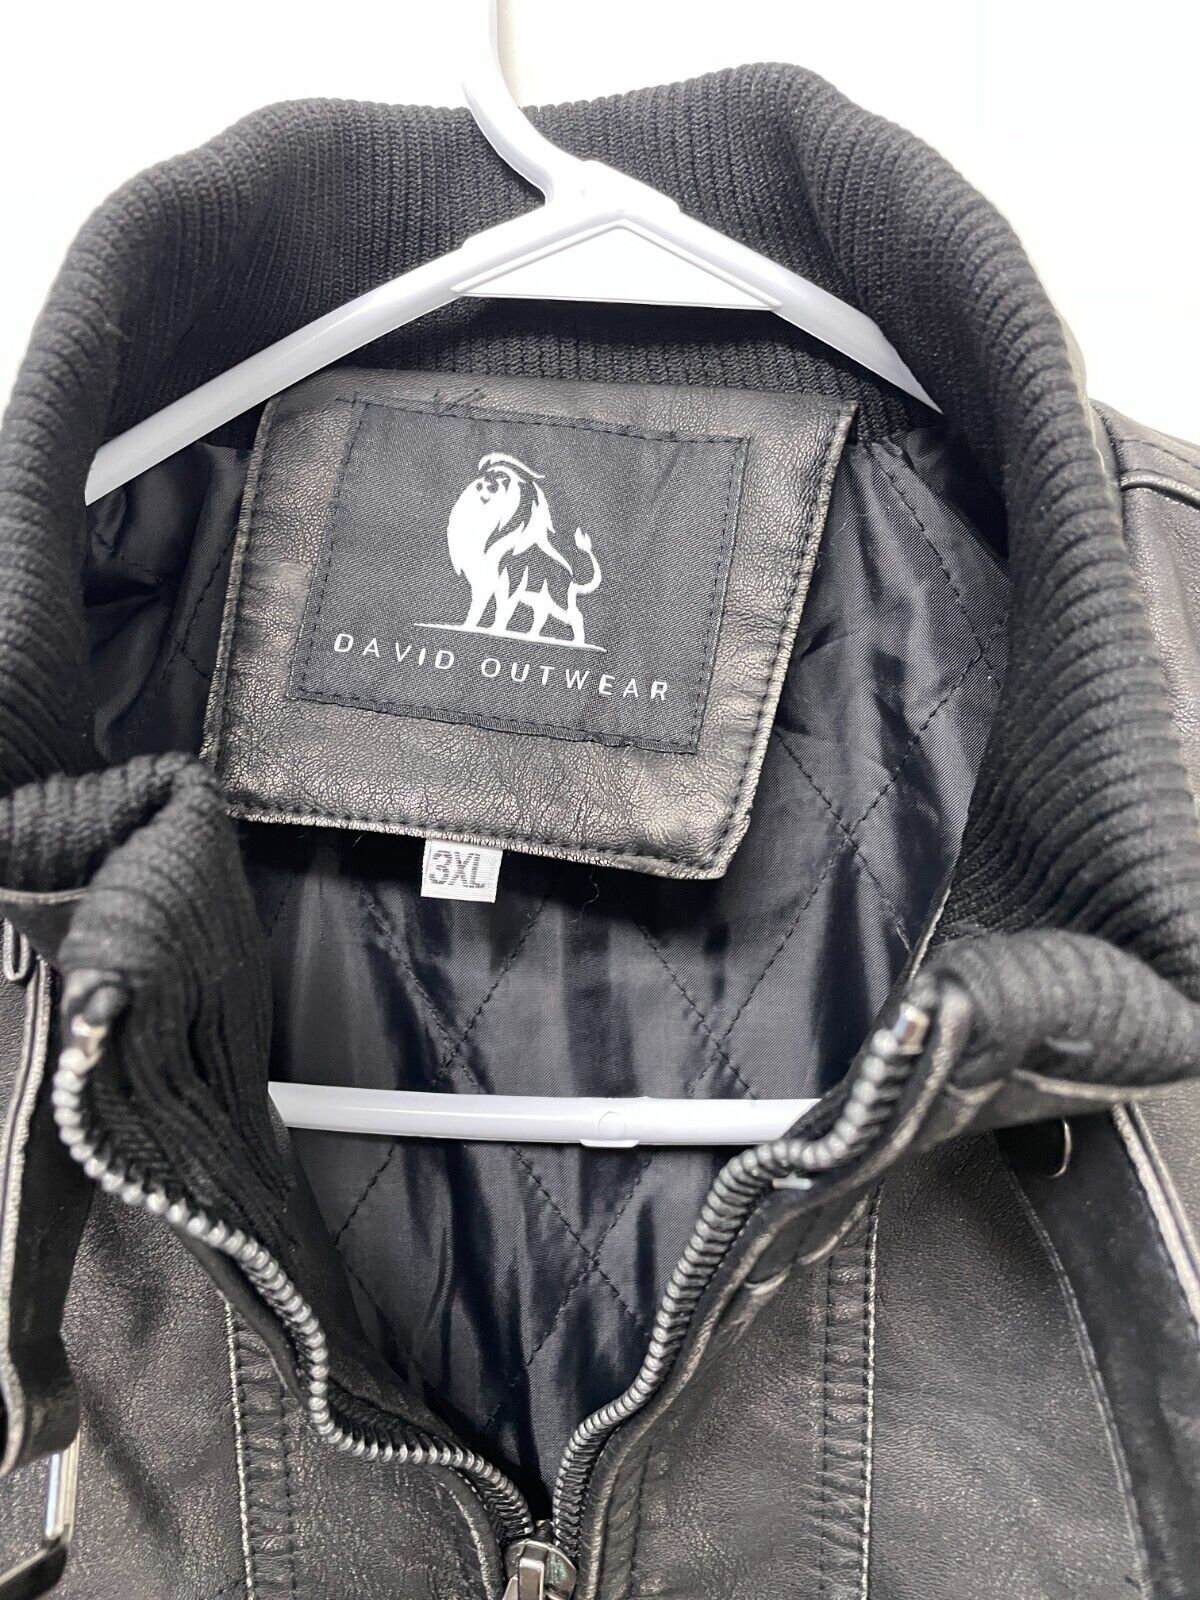 David Outerwear Mens 3XL Bonanza Faux Leather Jacket Black Full Zip Waterproof